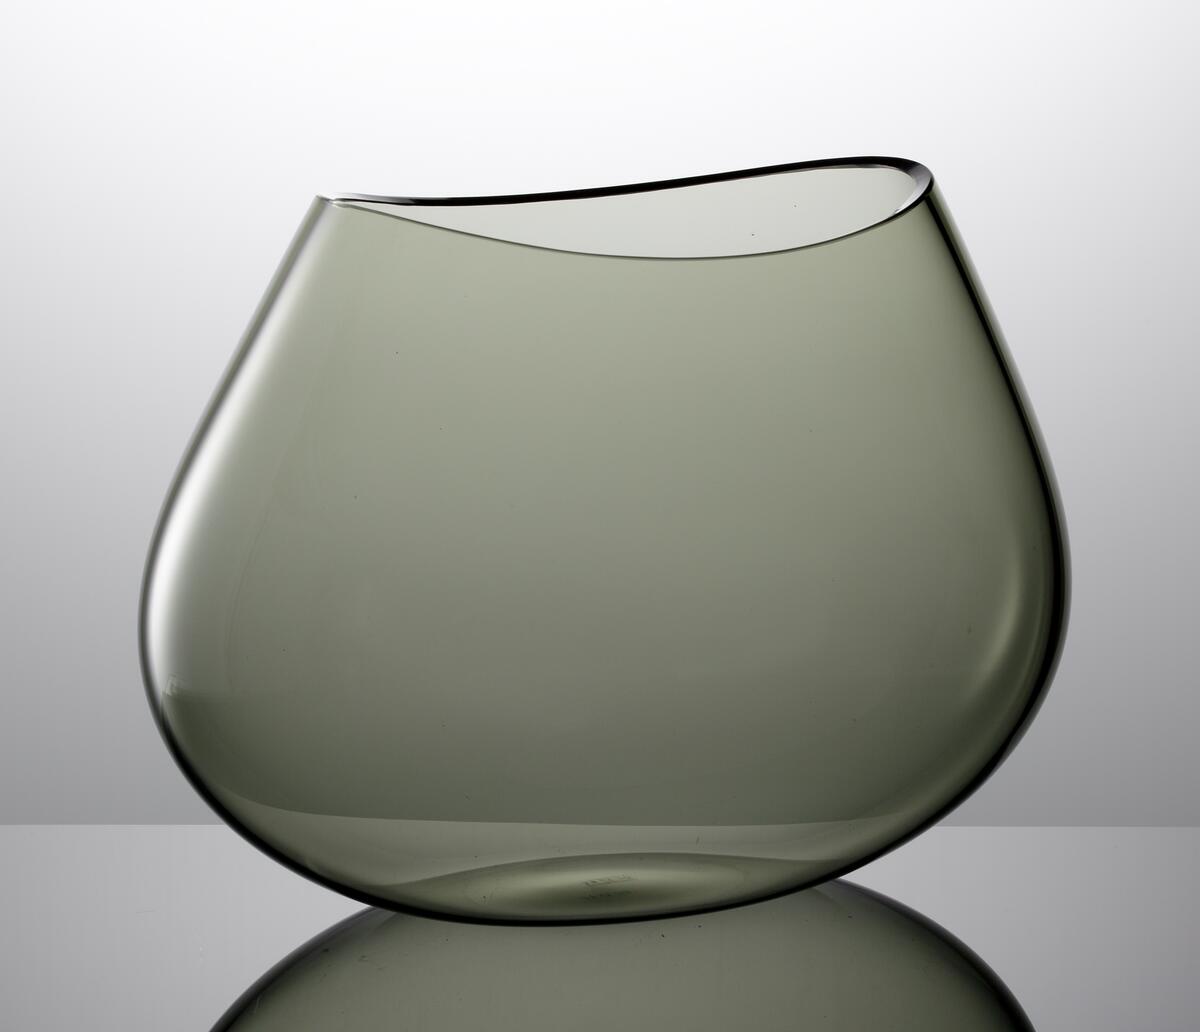 Formgivare: Nils Landberg. Stor skål i rökgrå färg. Oval form med svängd mynning.